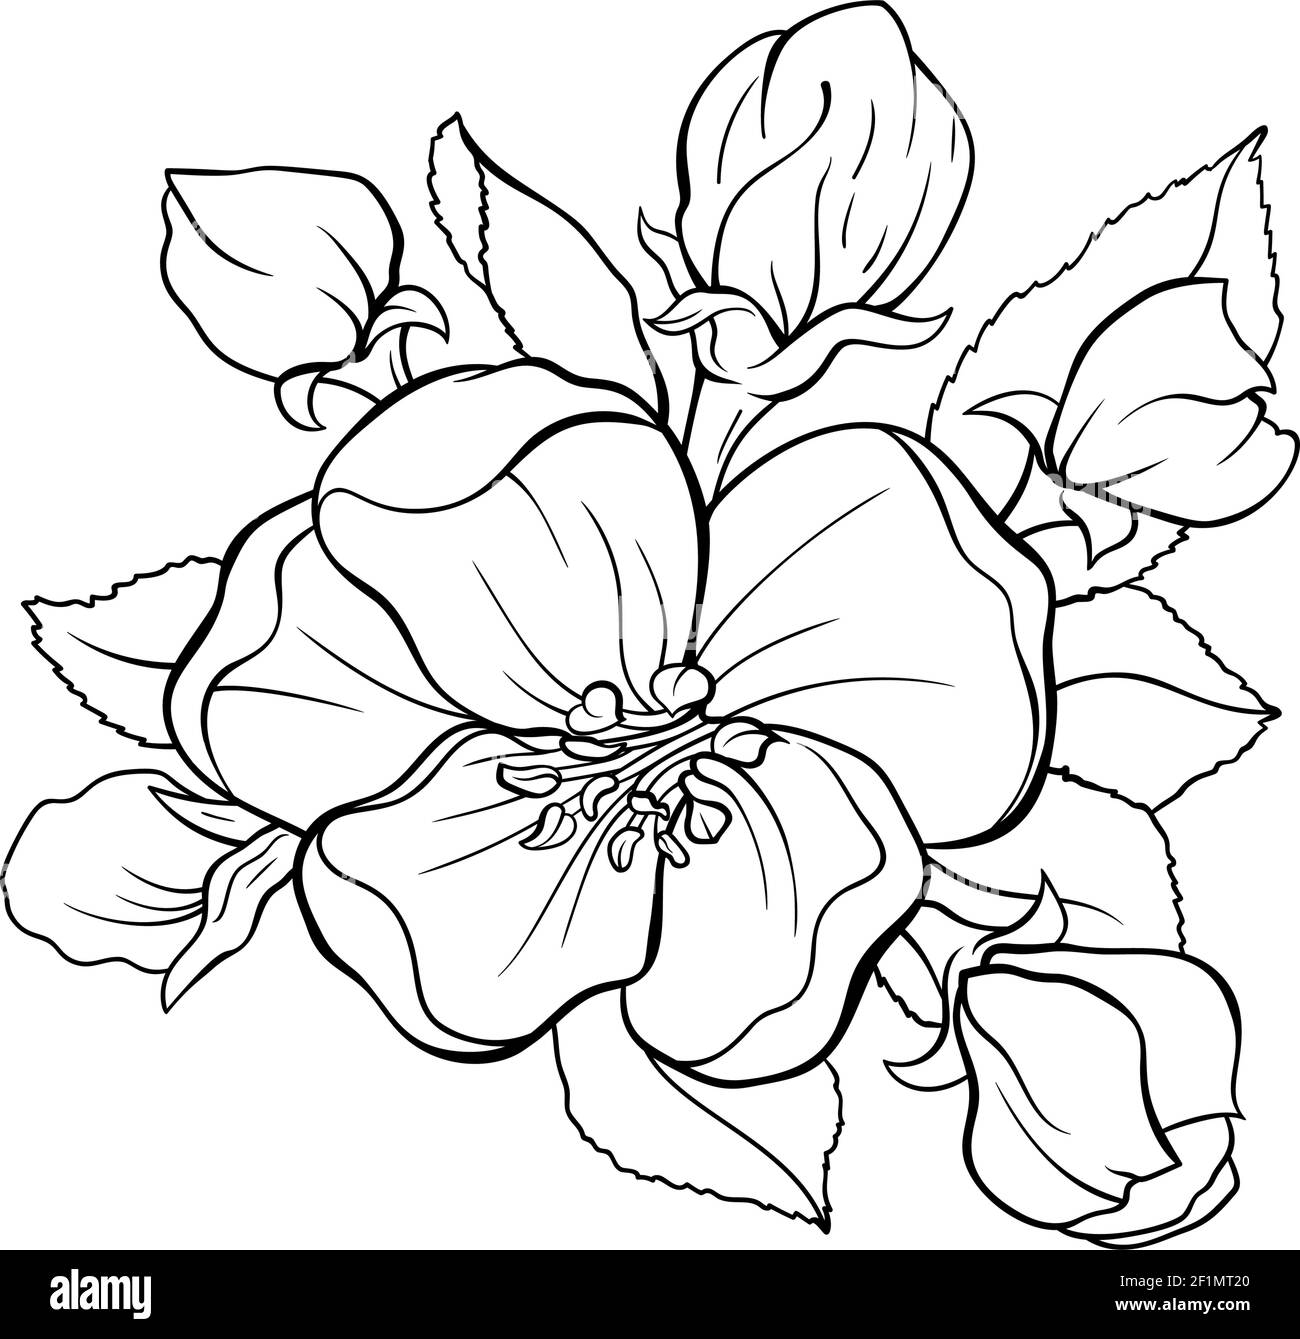 Dessin de contour de bouquete de fleur de pommier japonais Illustration de Vecteur